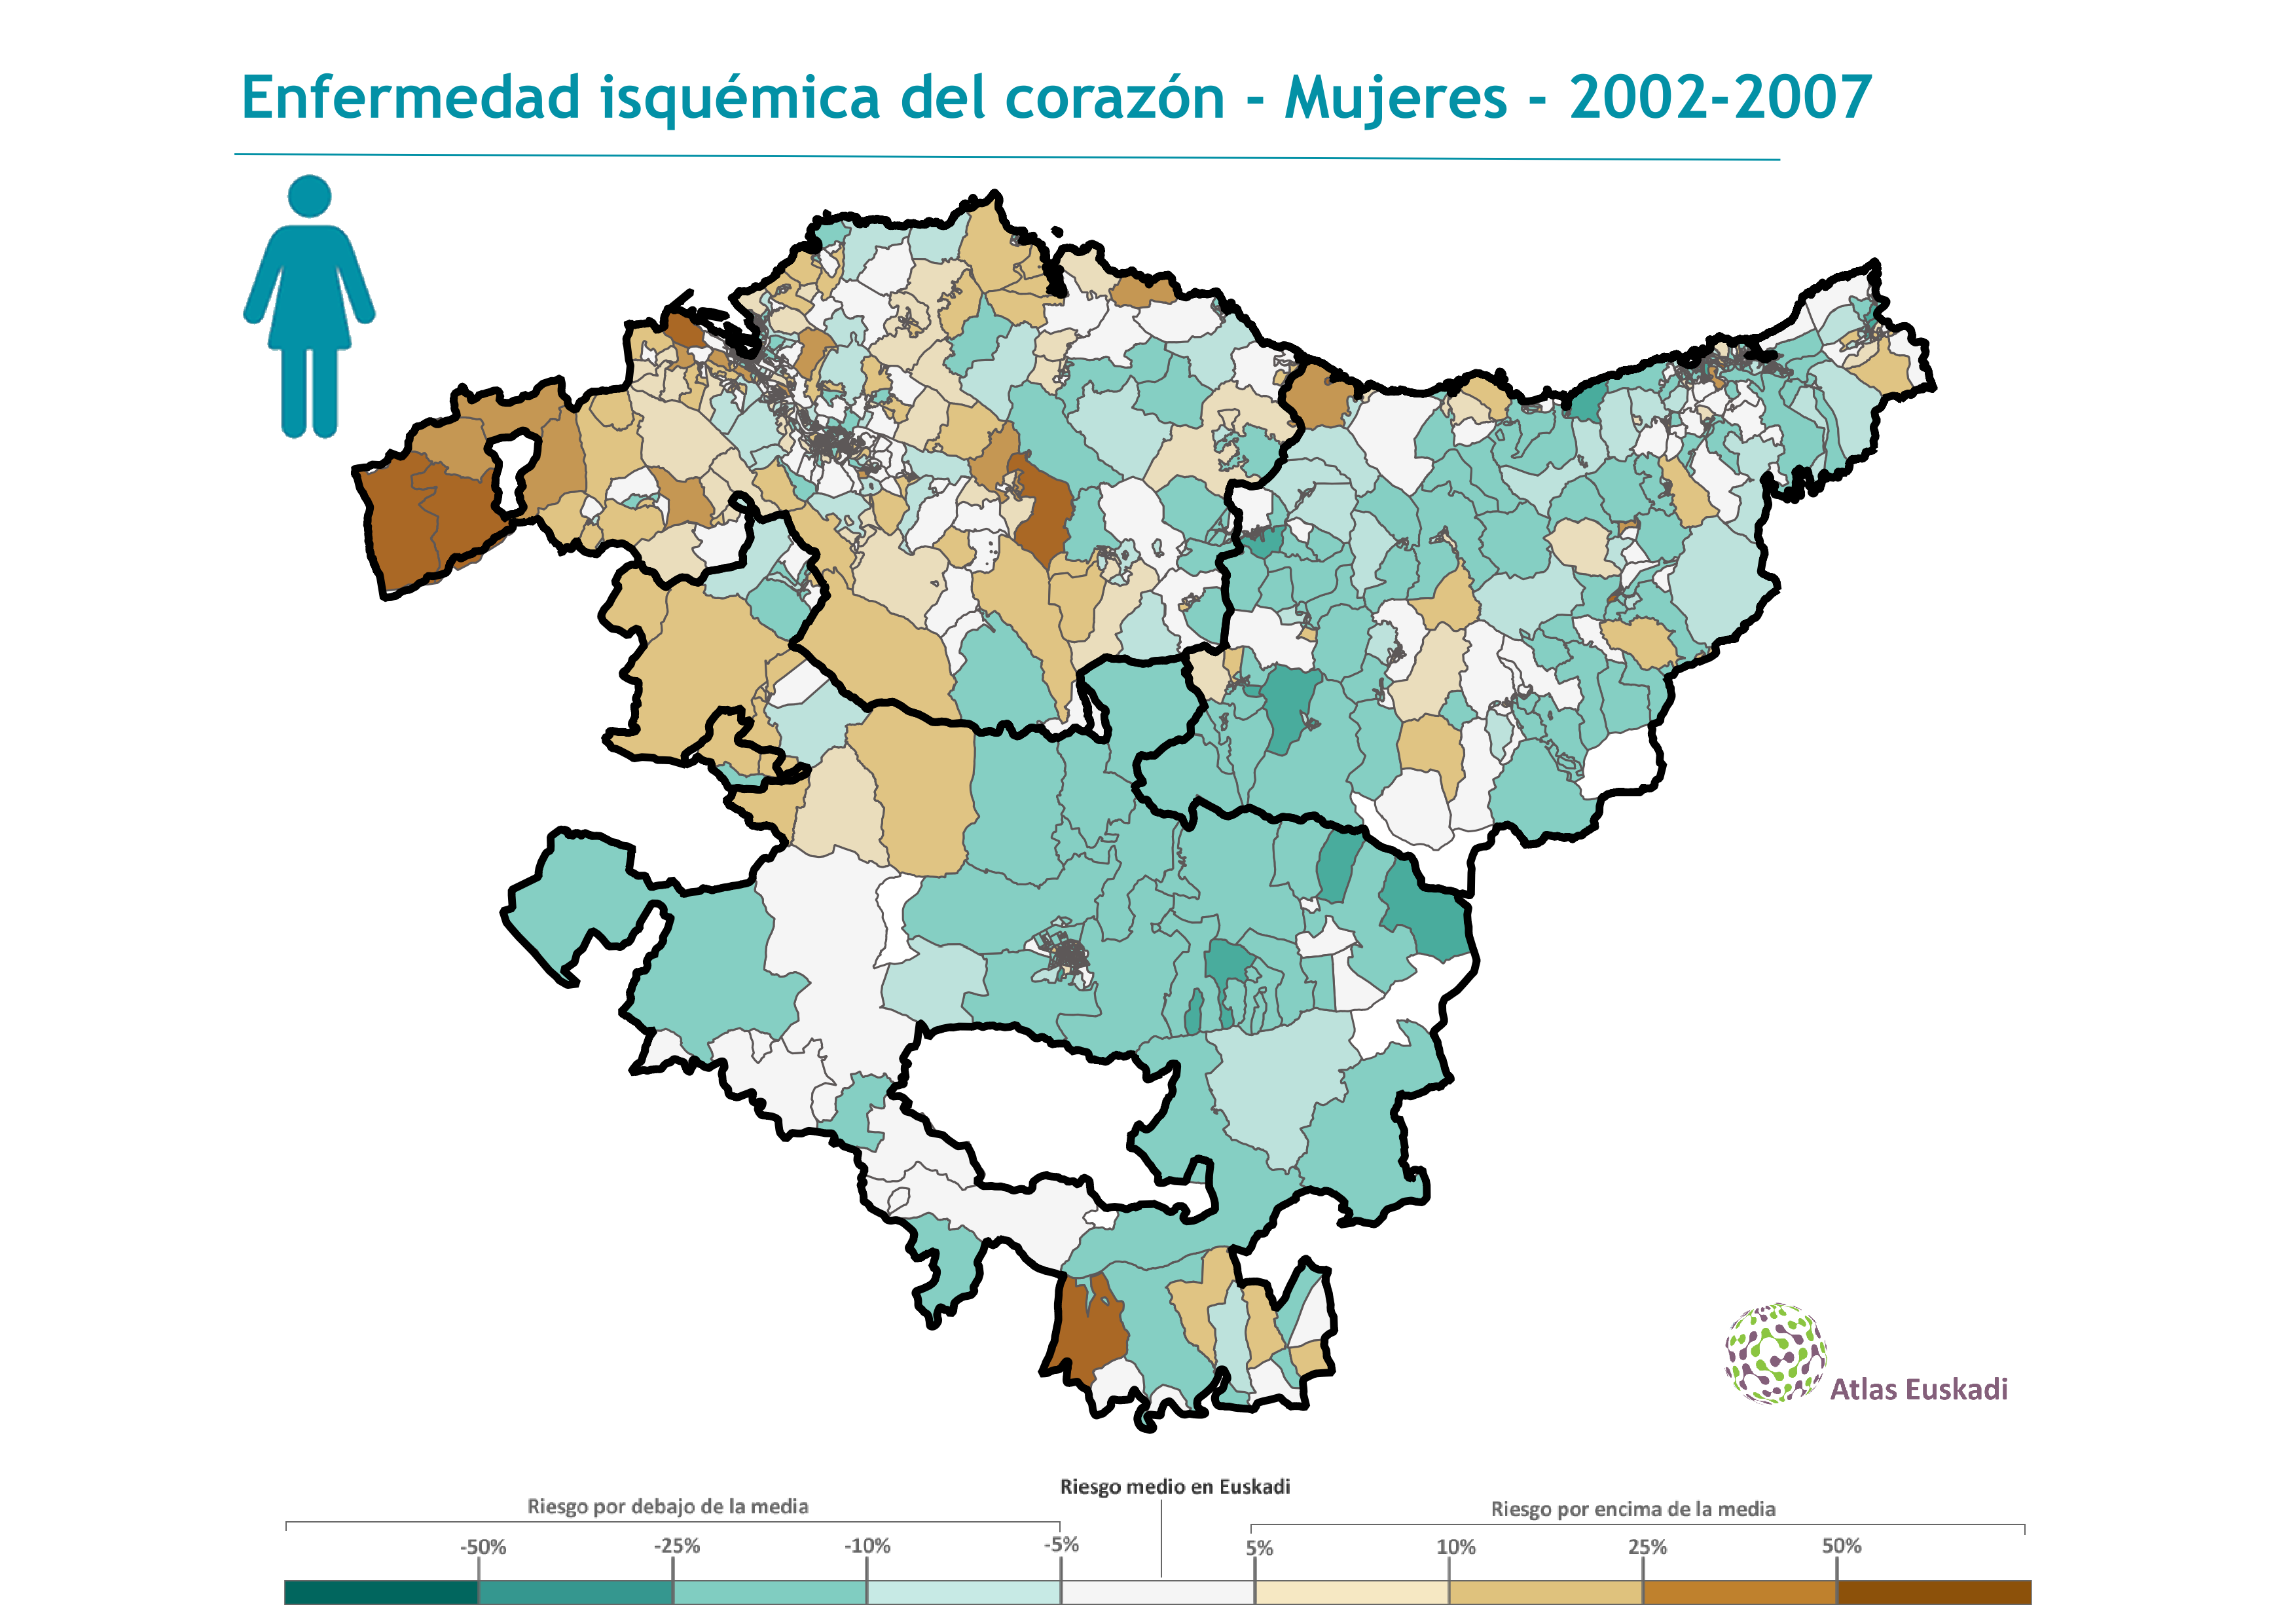 Enfermedad isquémica del corazón mujeres  2002-2007 Euskadi